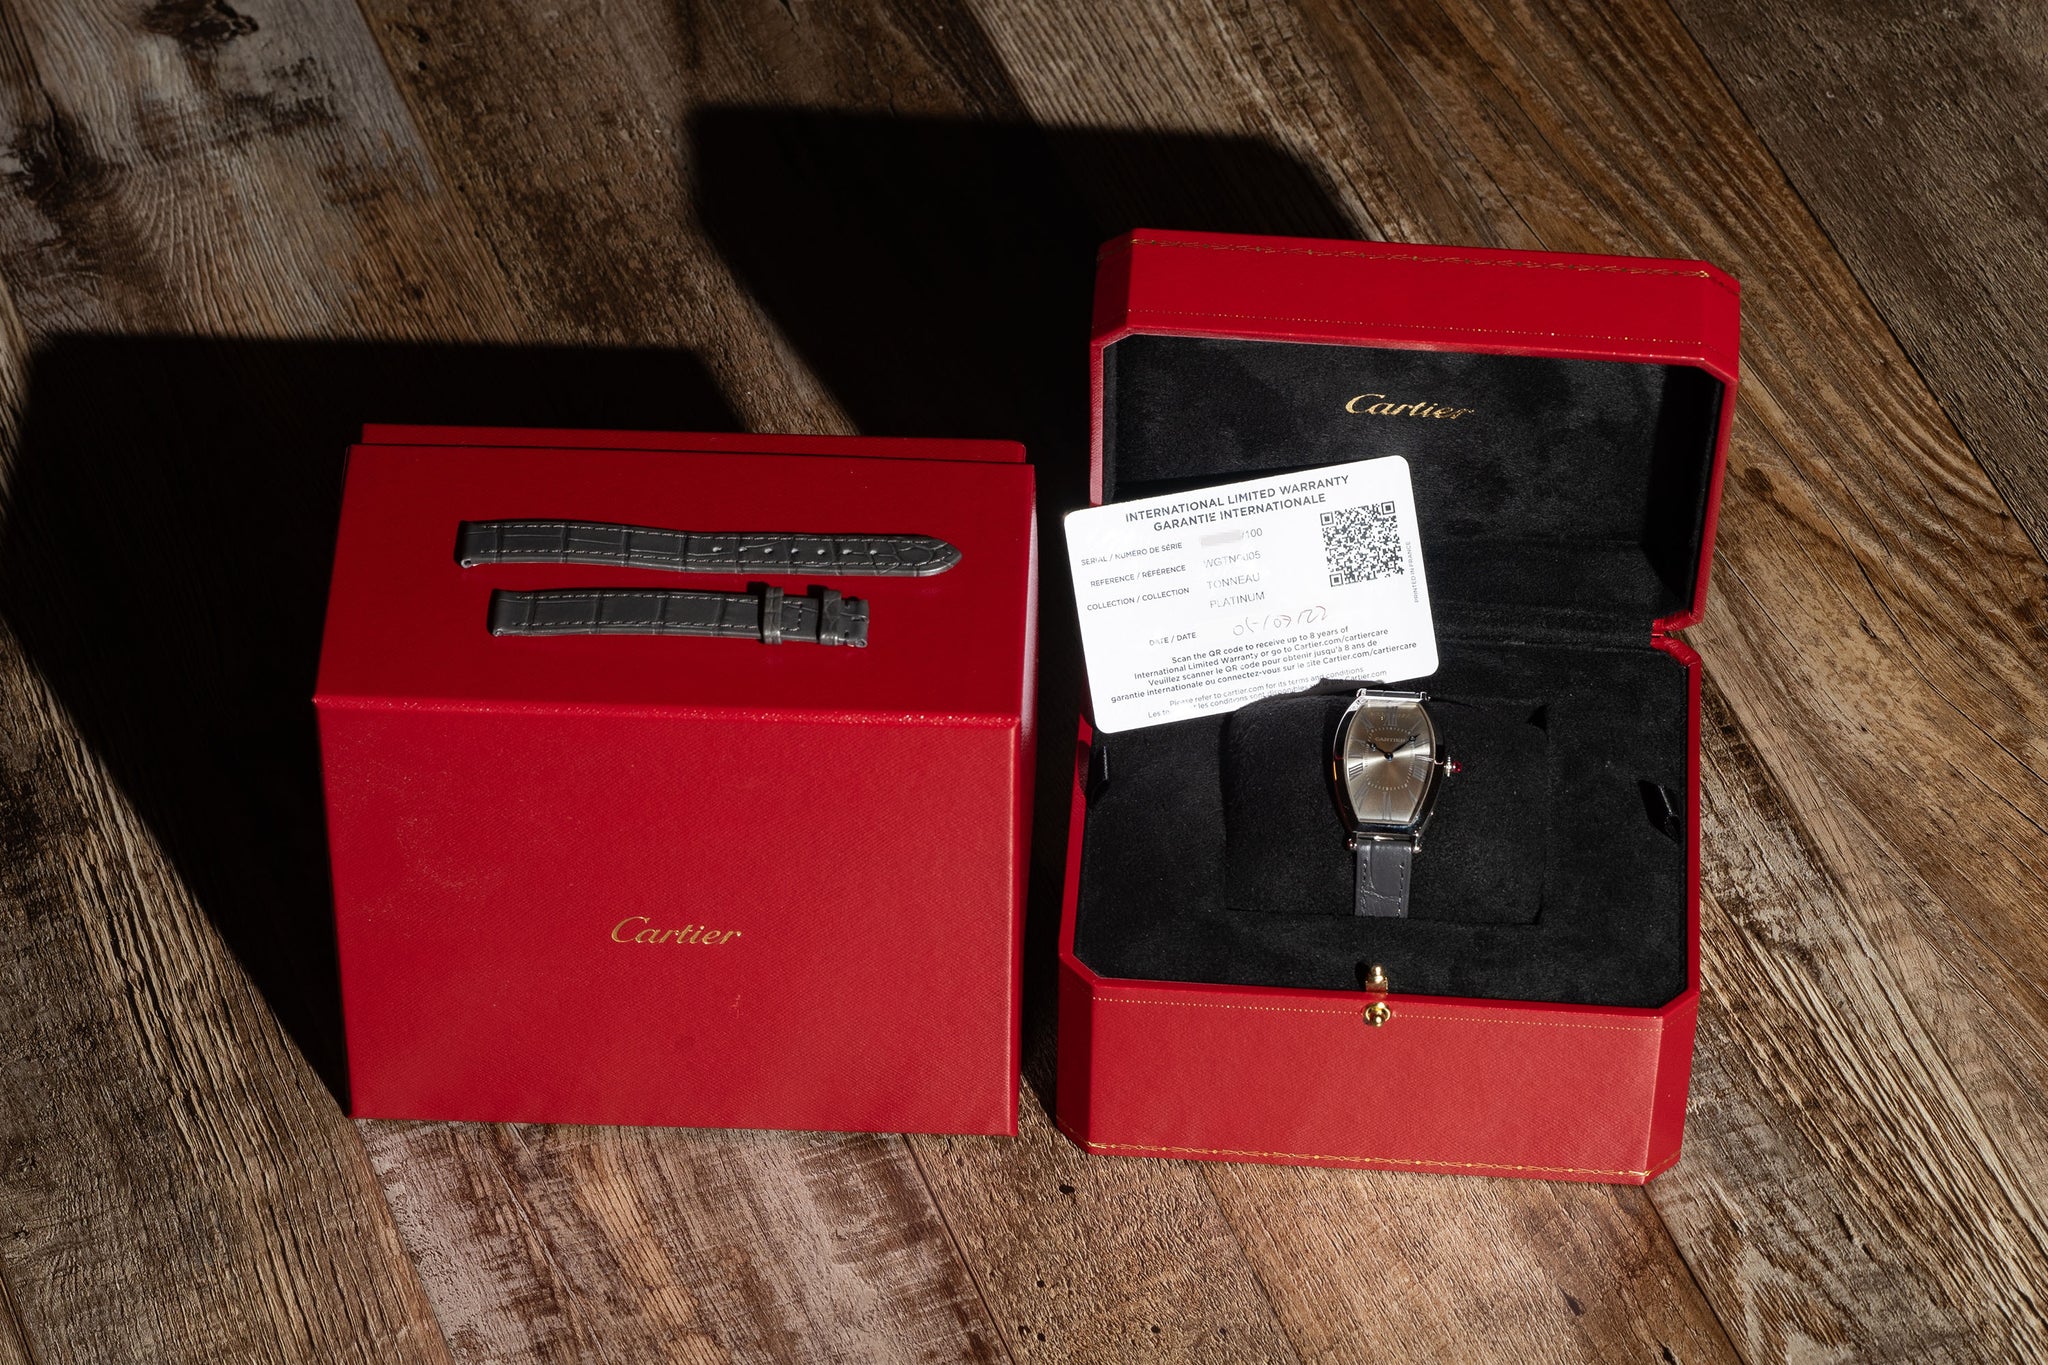 Cartier Tonneau Platinum Limited Edition (100 pieces) - Full Set/Mint